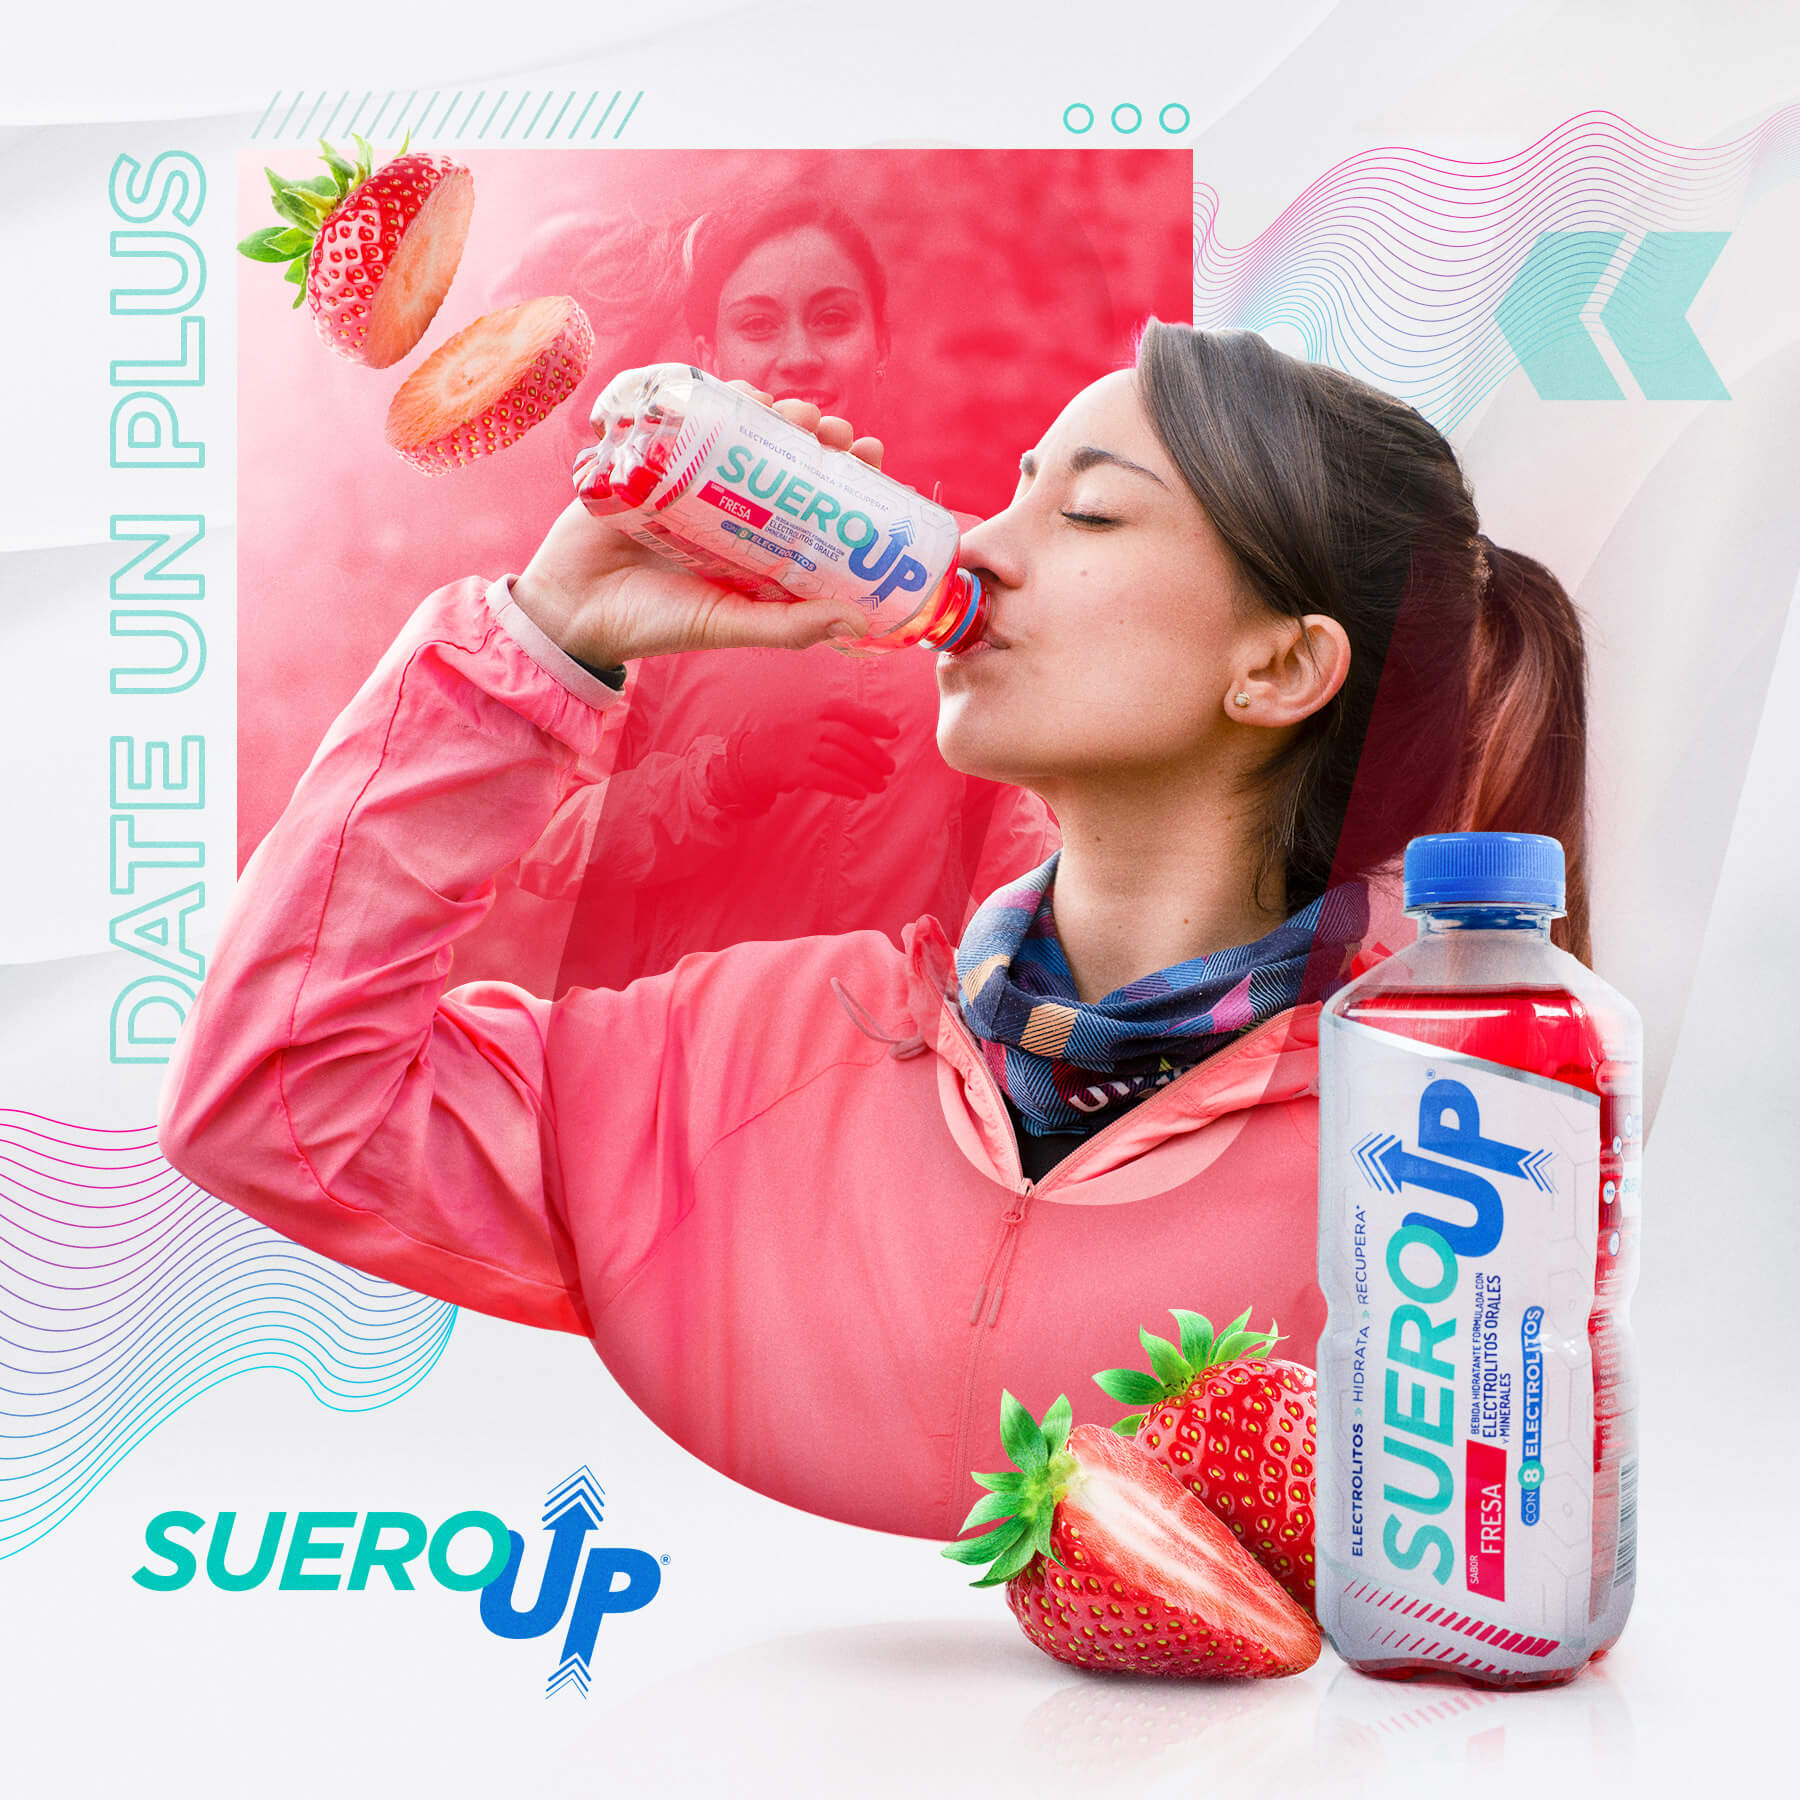 Gracias a sus electrolitos, #SueroUp te mantendrá hidratado después de tu rutina de ejercicio.